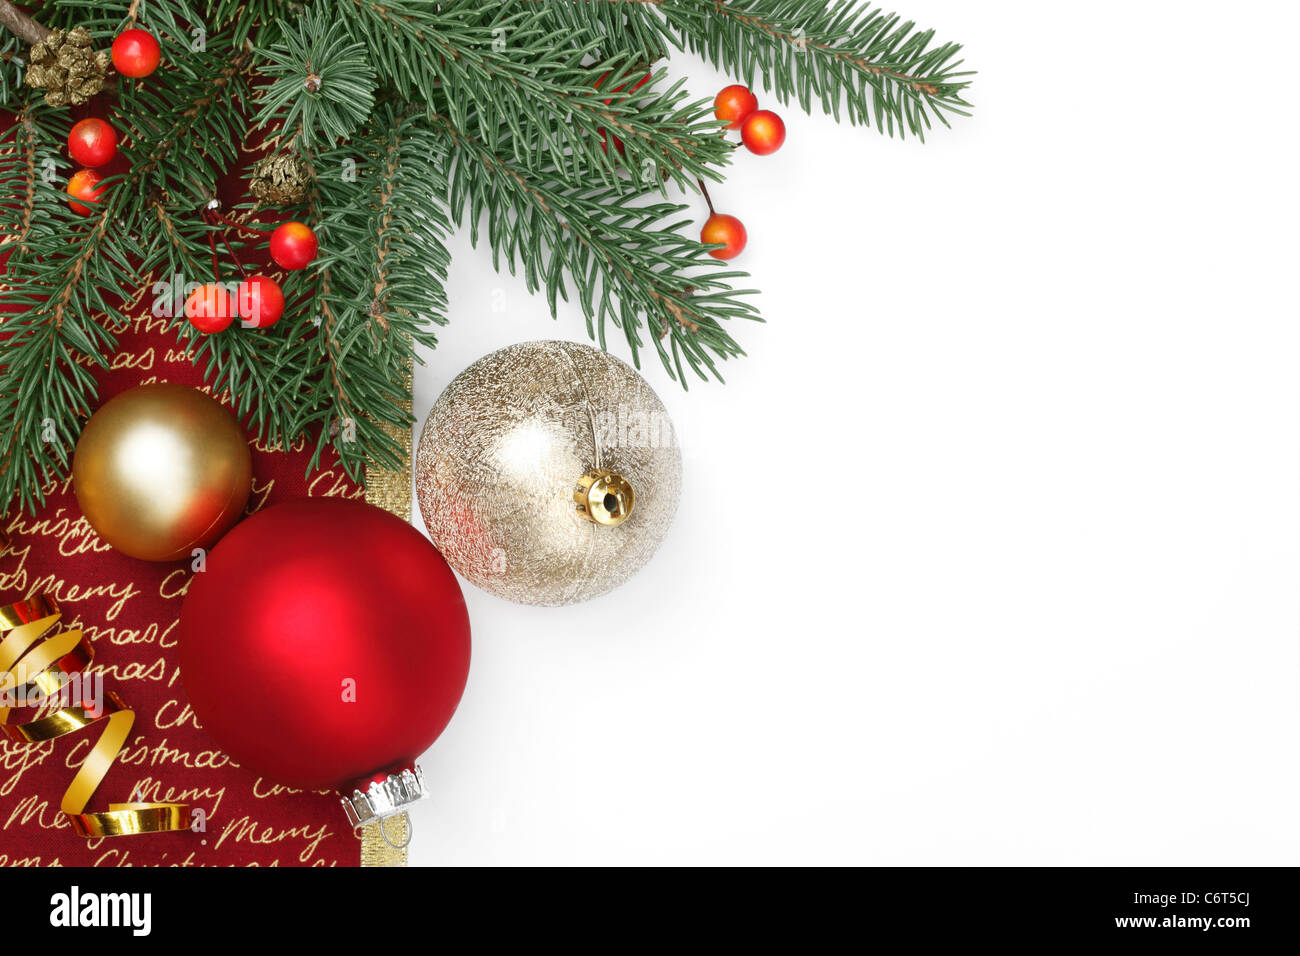 Sfondi Natalizi Bianchi.Decorazione Per Albero Di Natale Su Sfondo Bianco Foto Stock Alamy